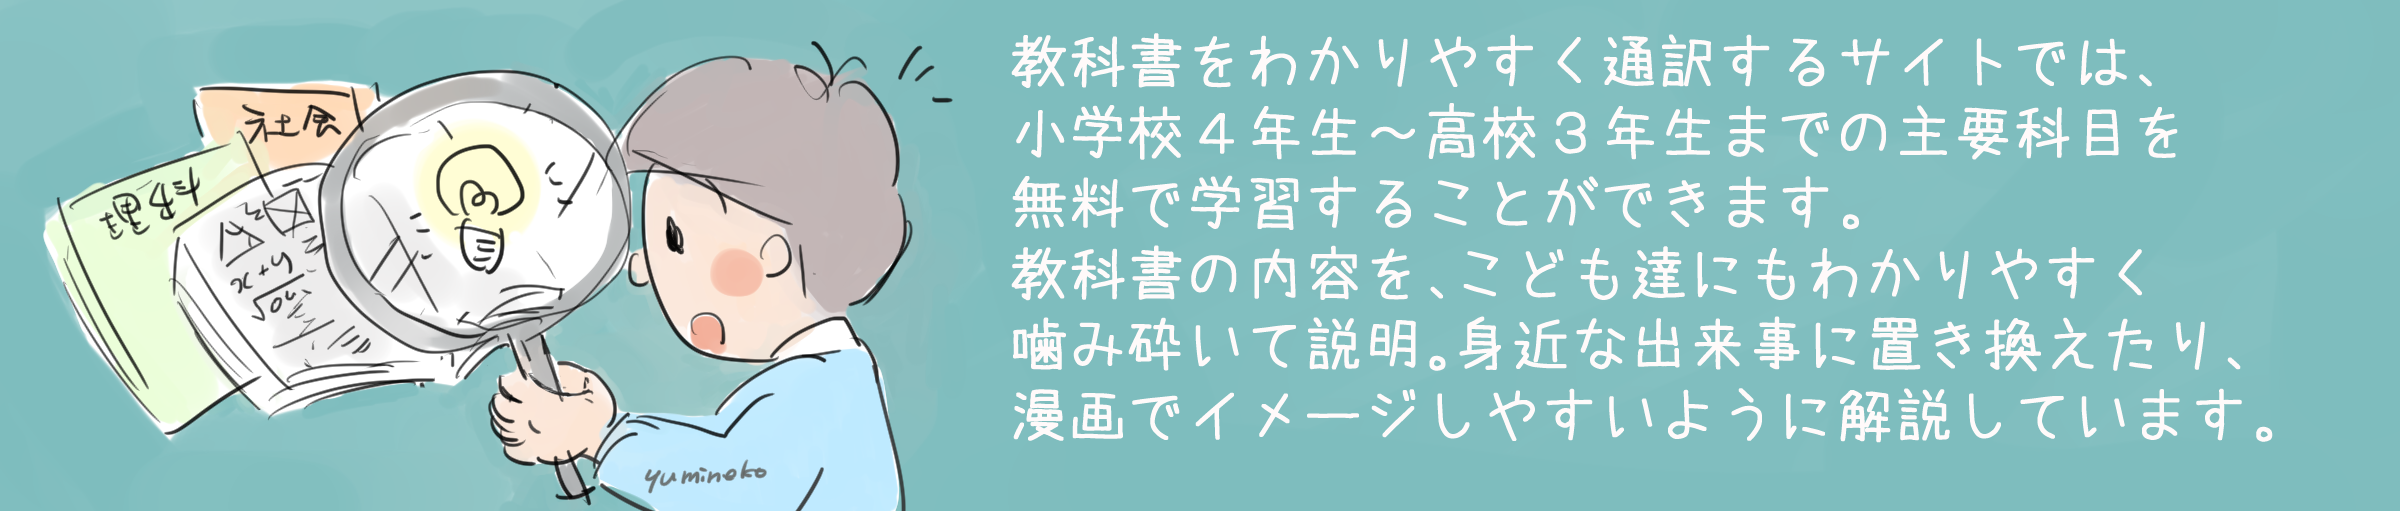 漢字検定8級 教科書をわかりやすく通訳するサイト